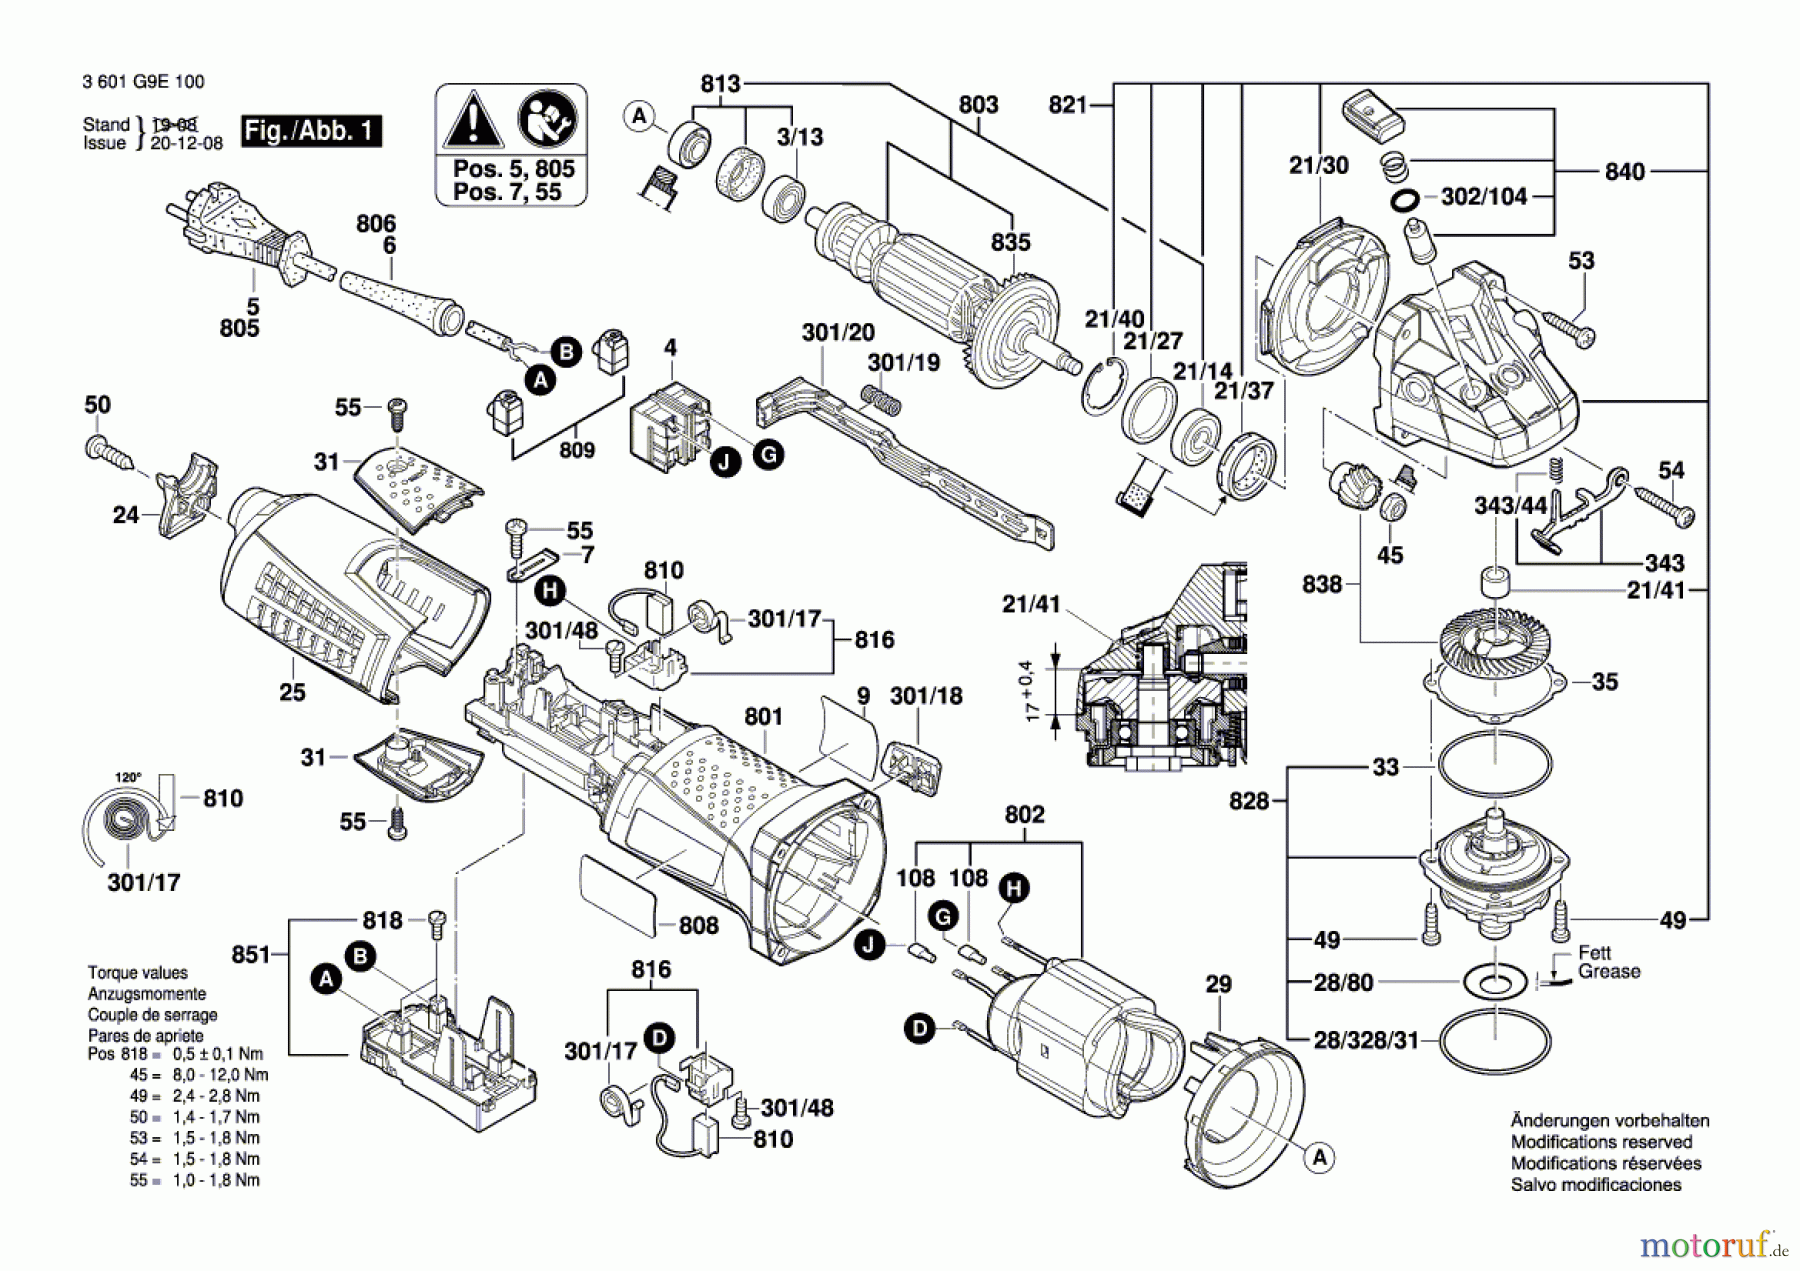  Bosch Werkzeug Winkelschleifer GWS 17-125 CIX Seite 1